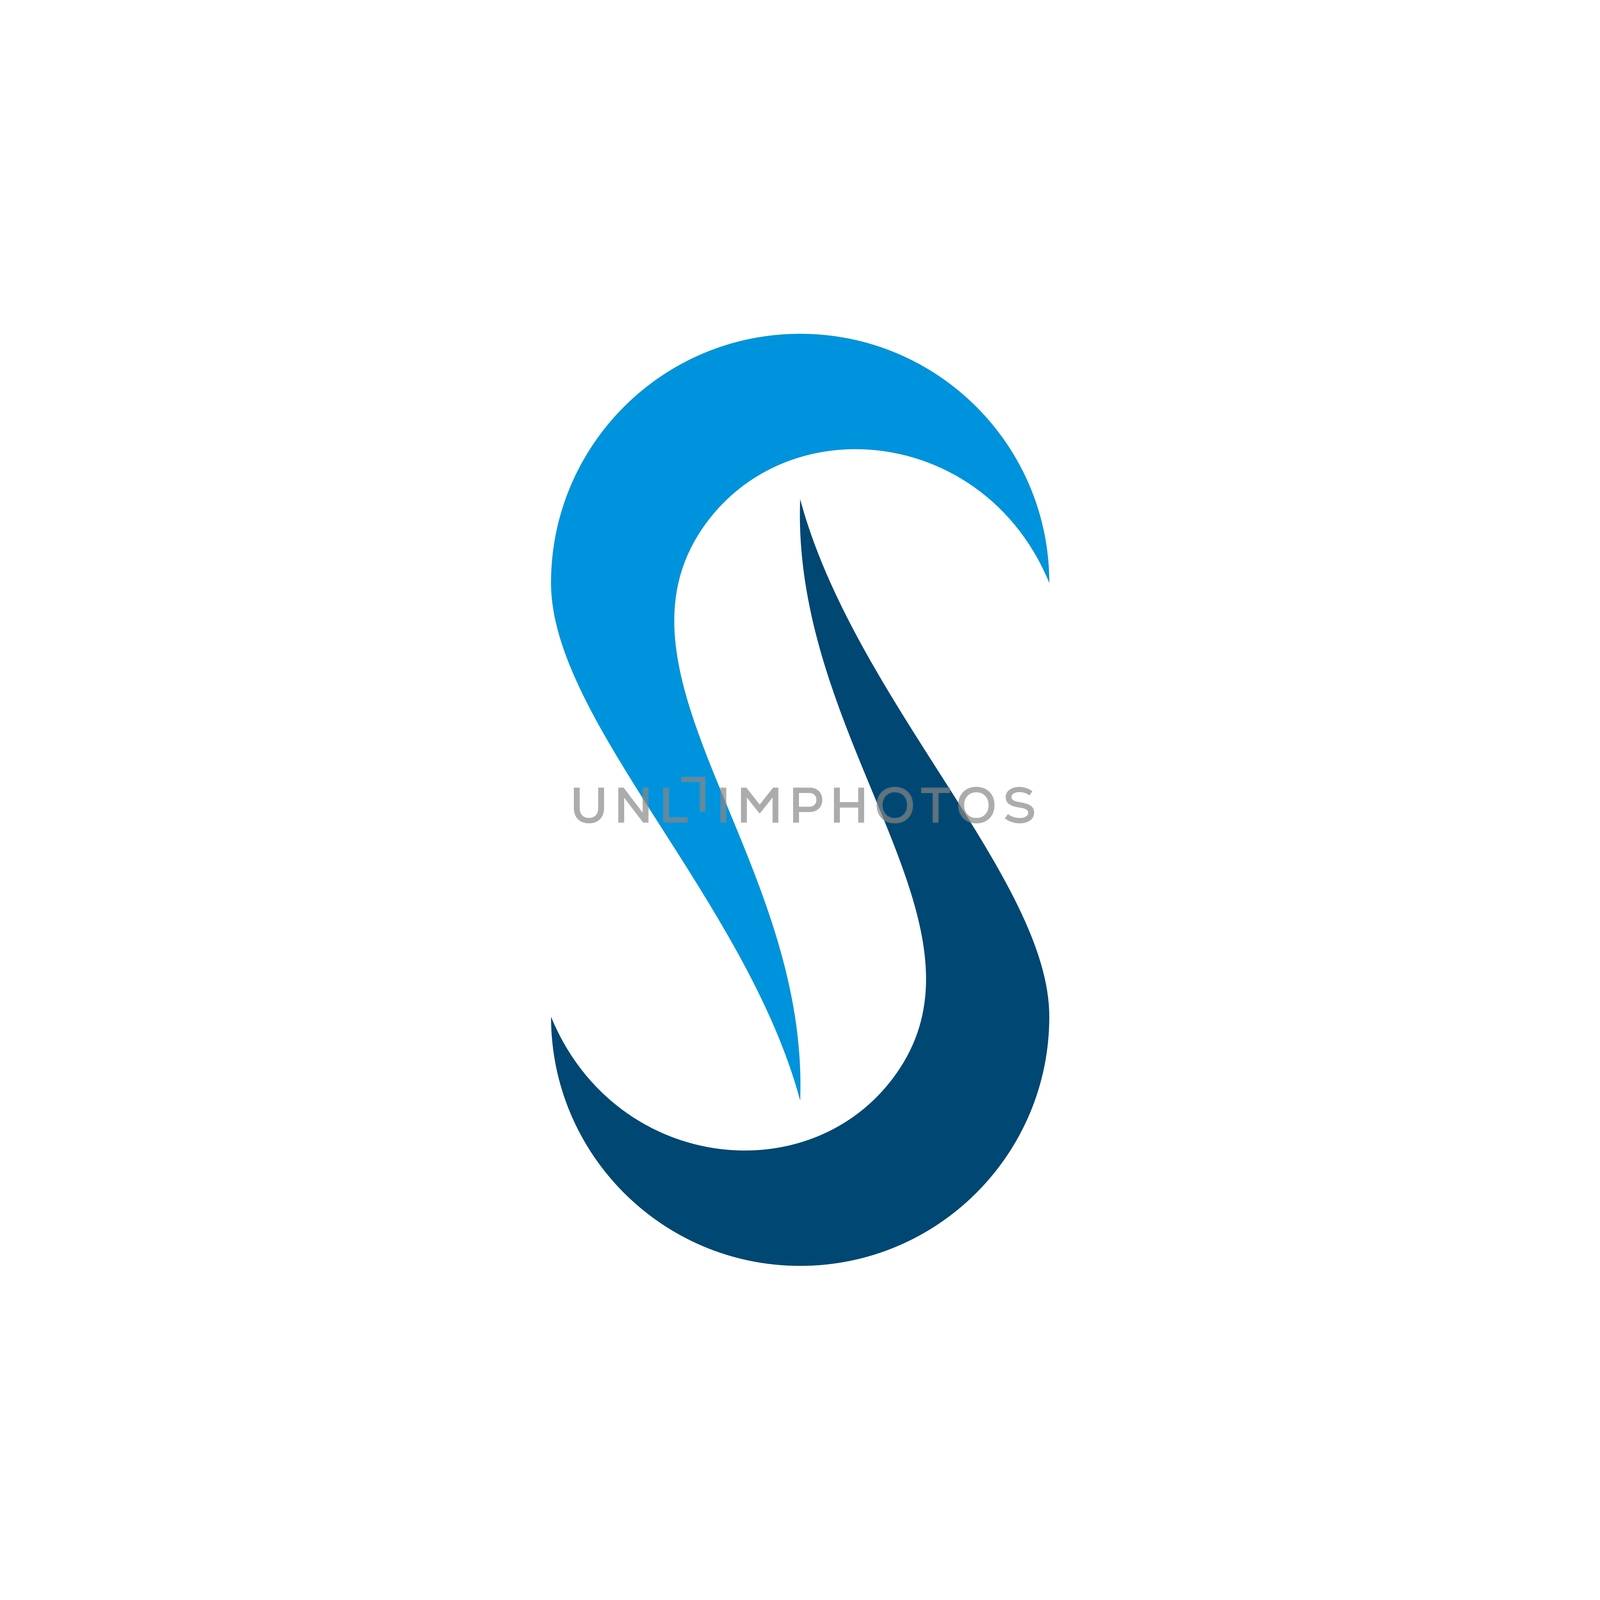 S Letter Swoosh Logo Template Illustration Design. Vector EPS 10.